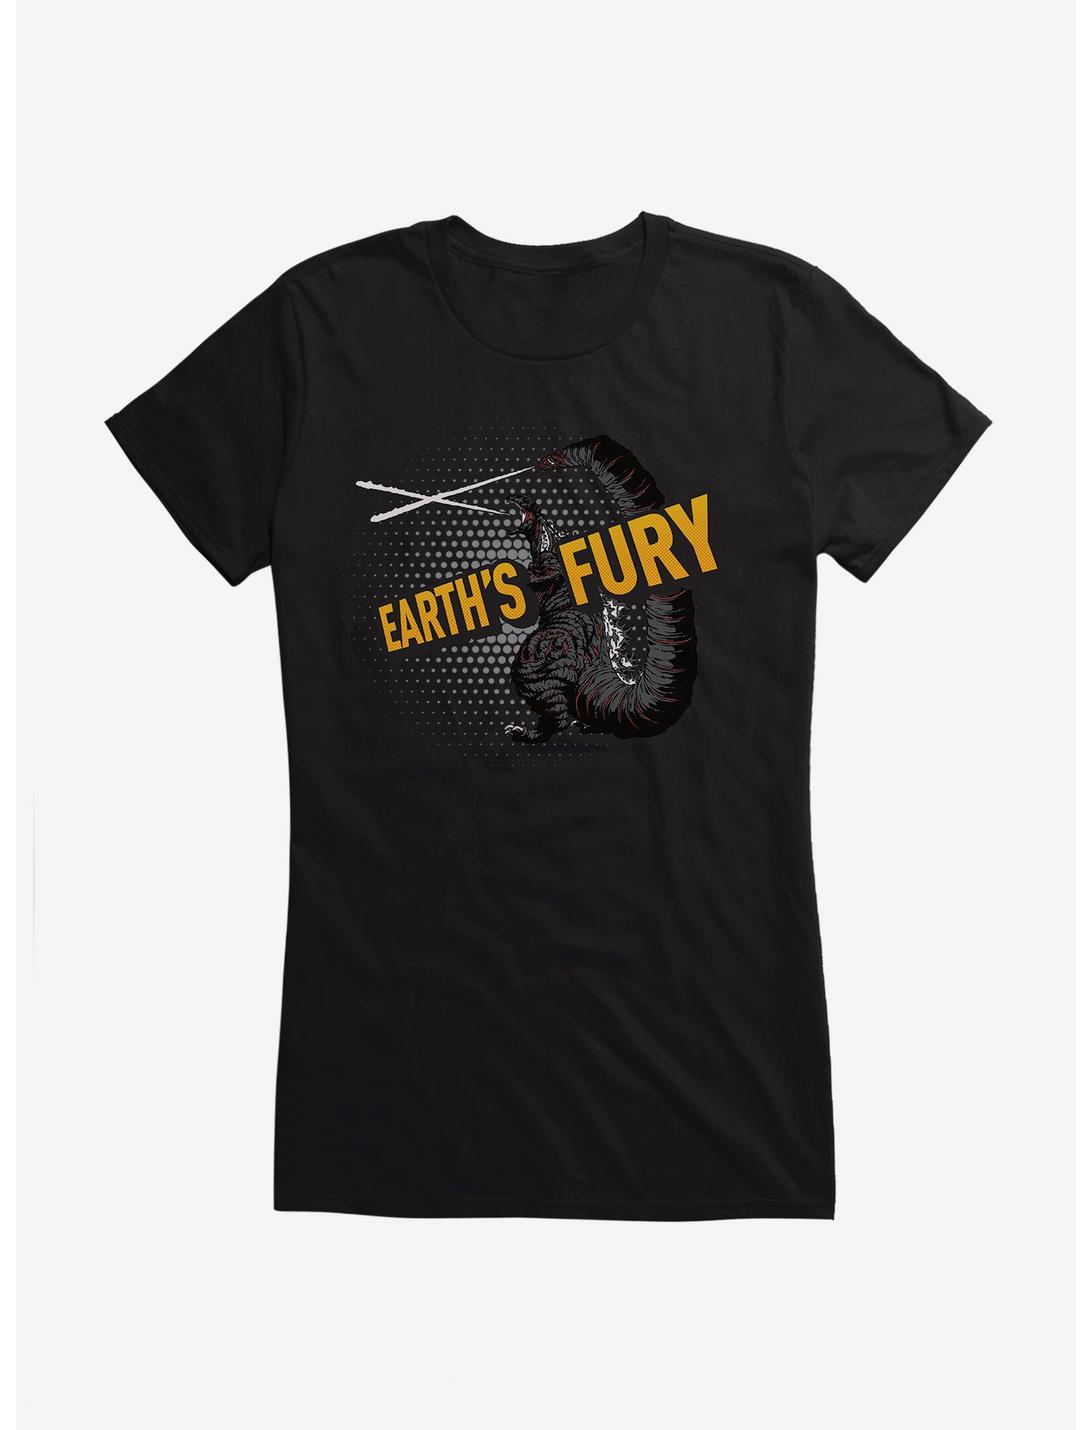 Godzilla Fury Girls T-Shirt, , hi-res